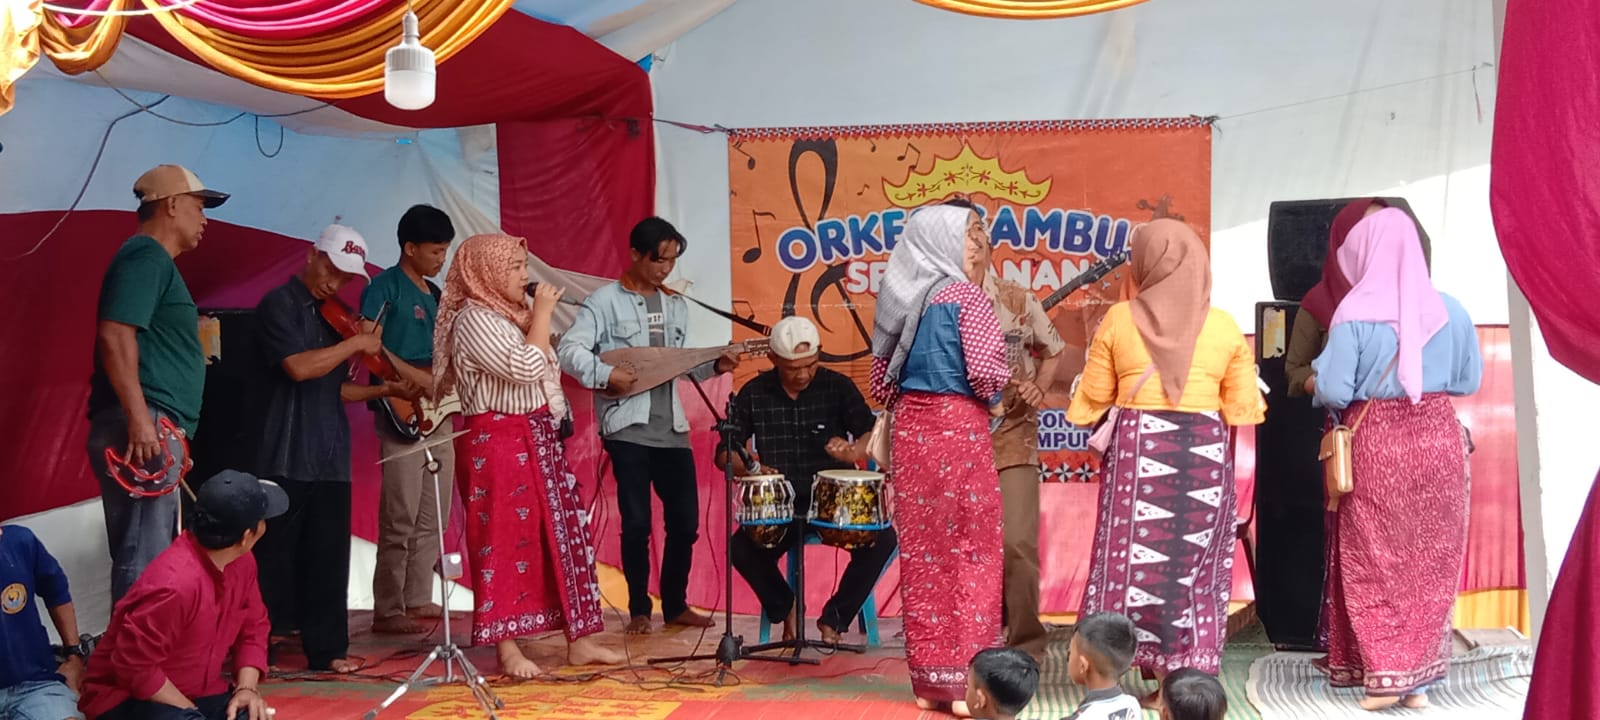 Orkes Gambus Kembali Booming, Legenda Seni Lampung Barat Mengaku Bangga